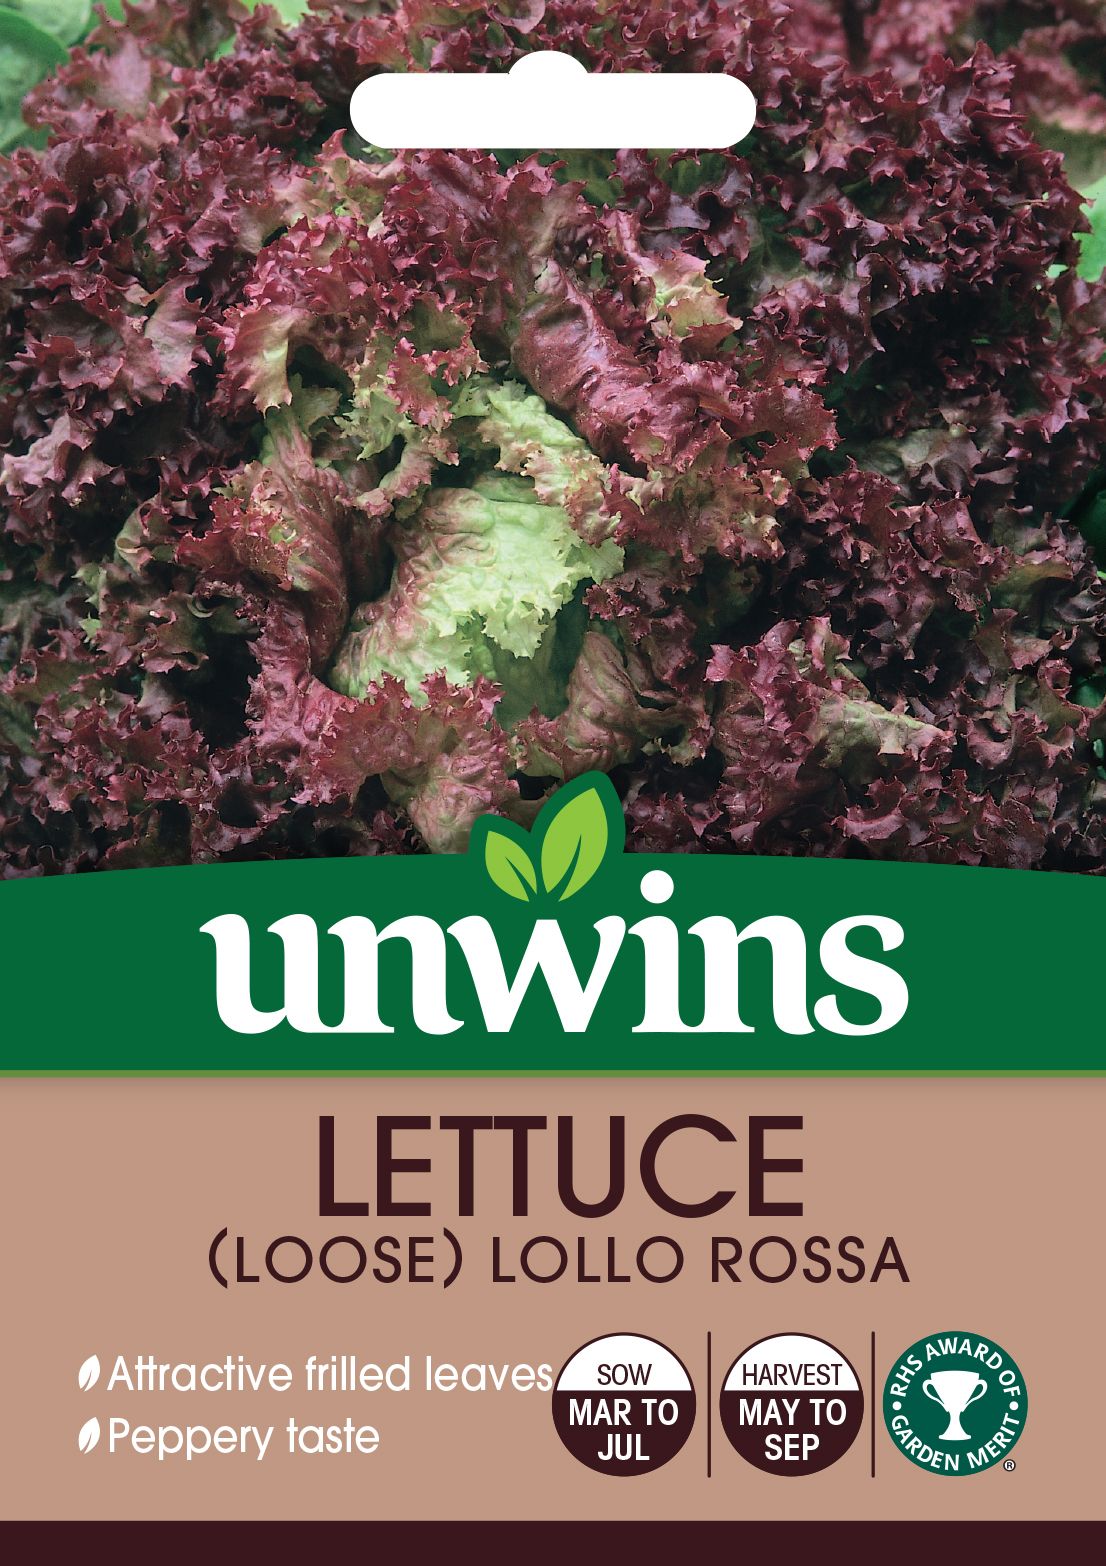 Lettuce (Loose) Lollo Rossa